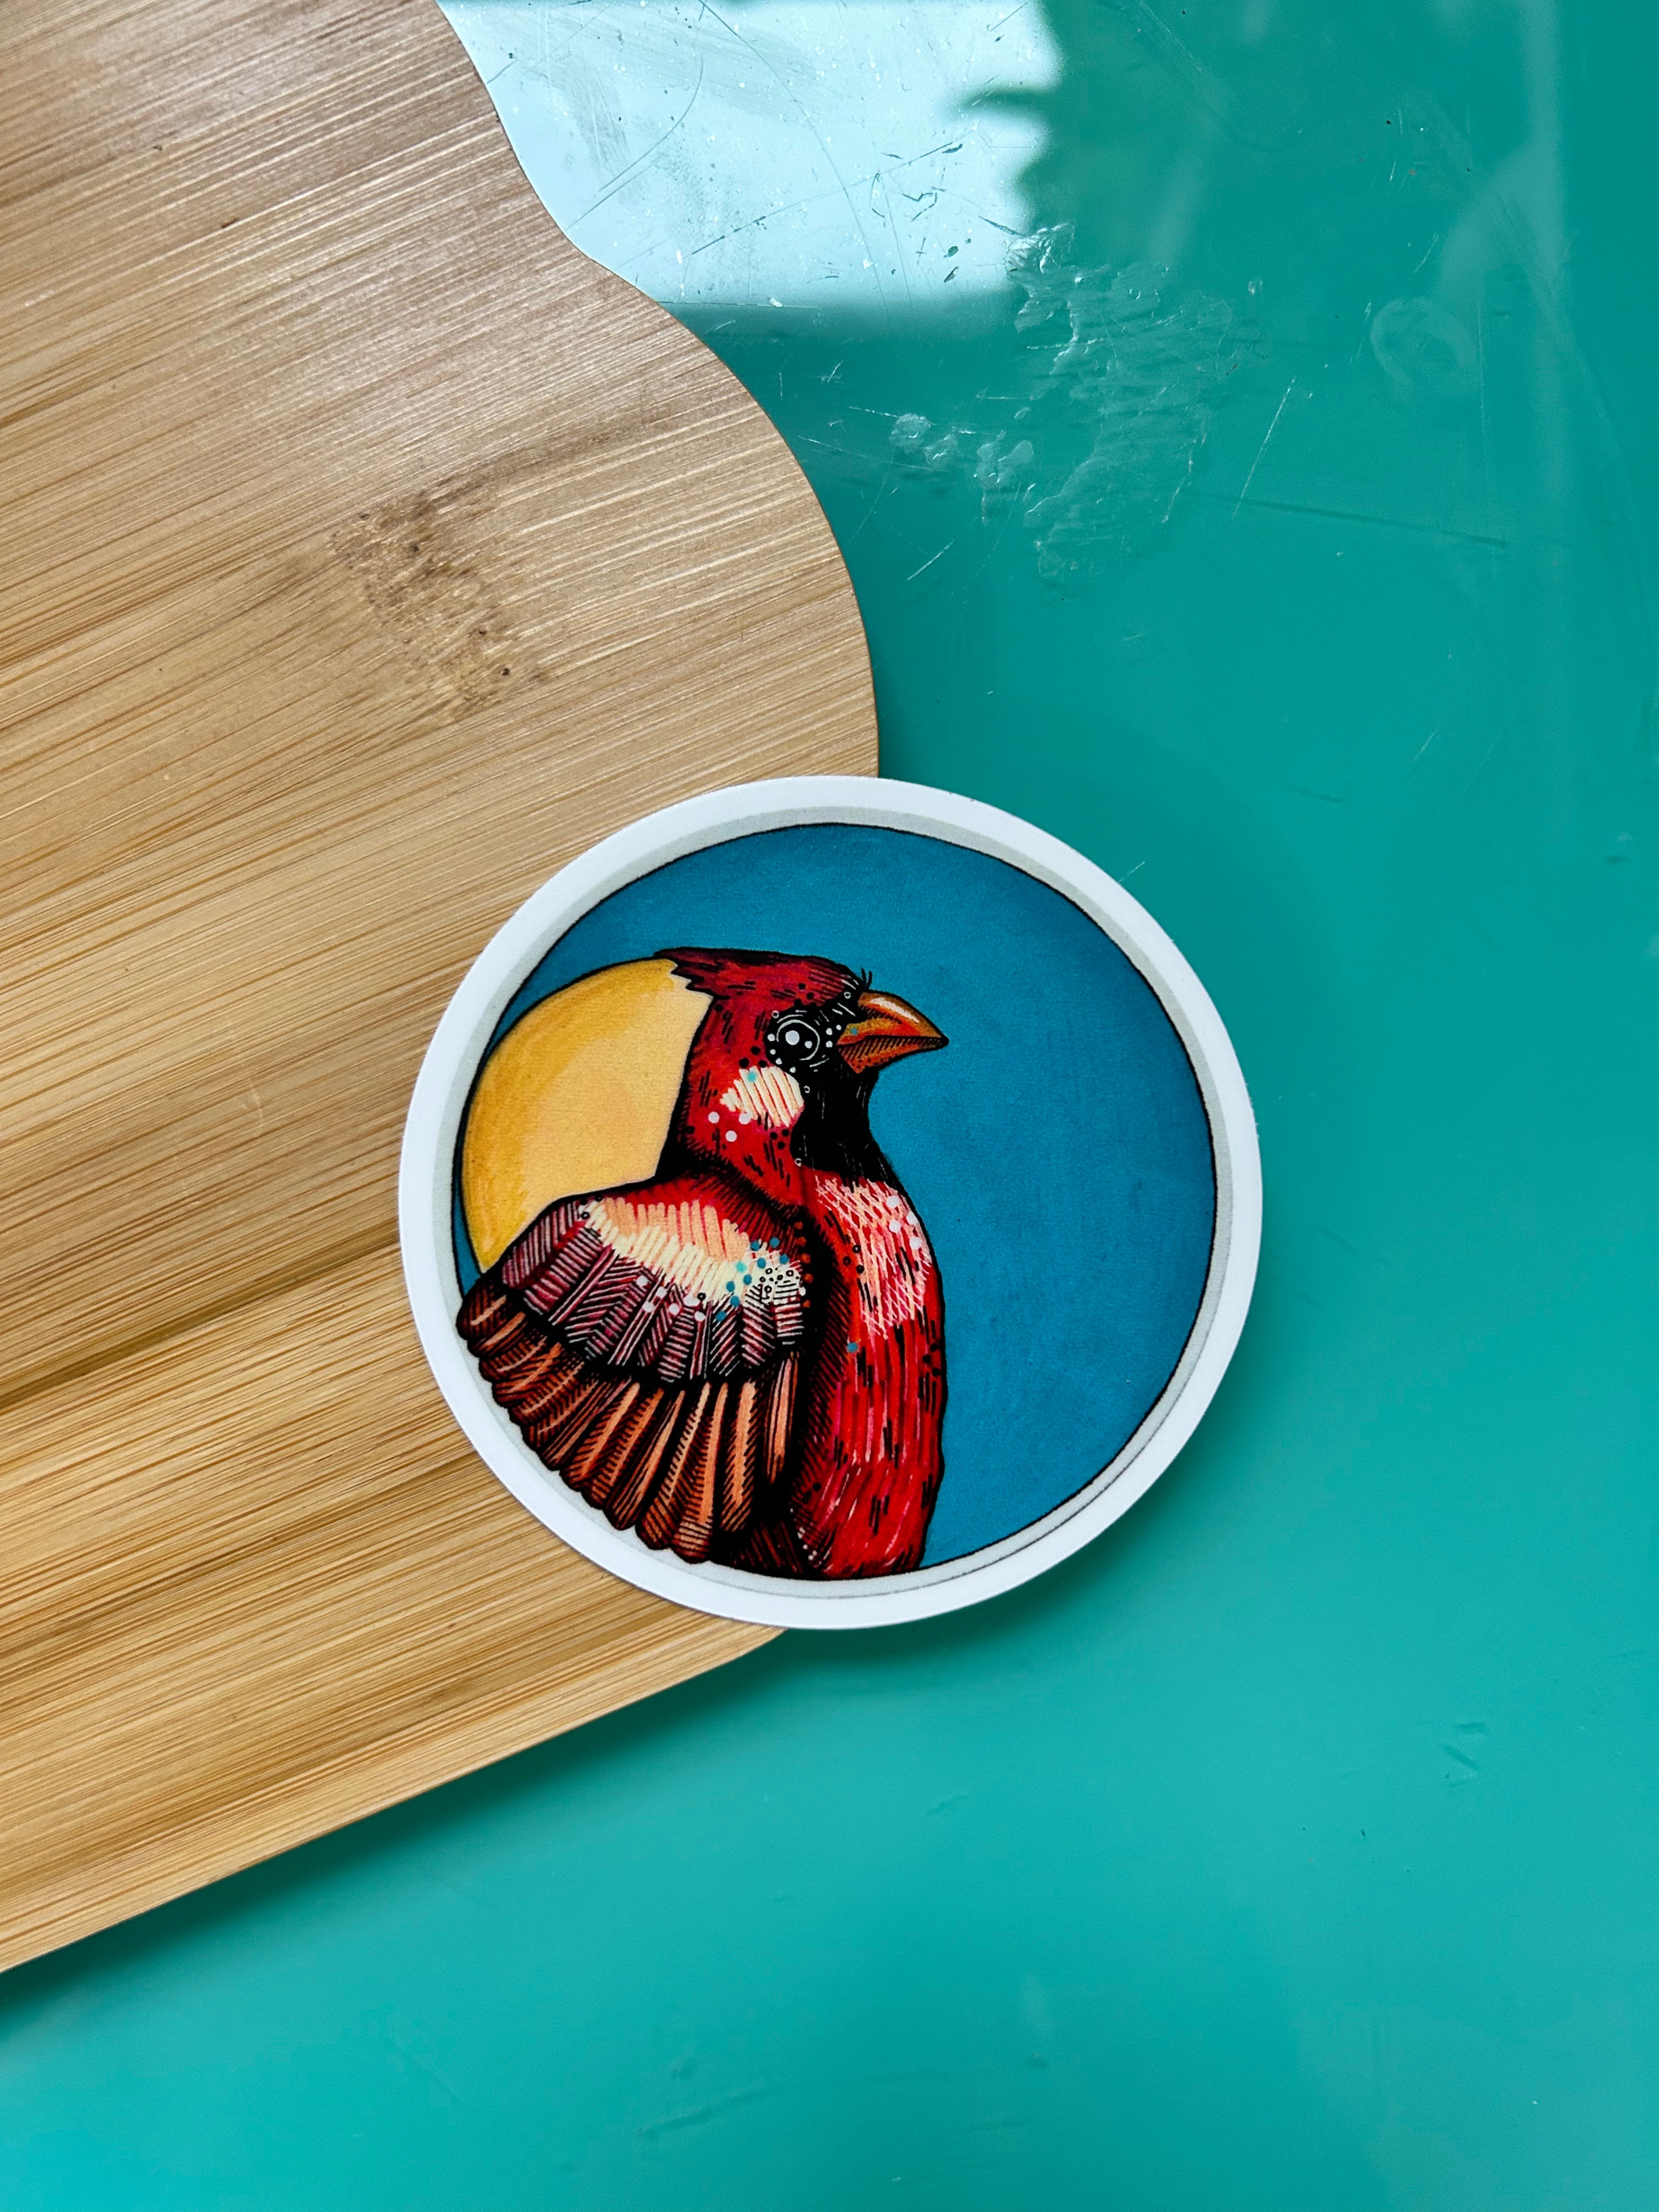 Cardinal Round Vinyl Sticker